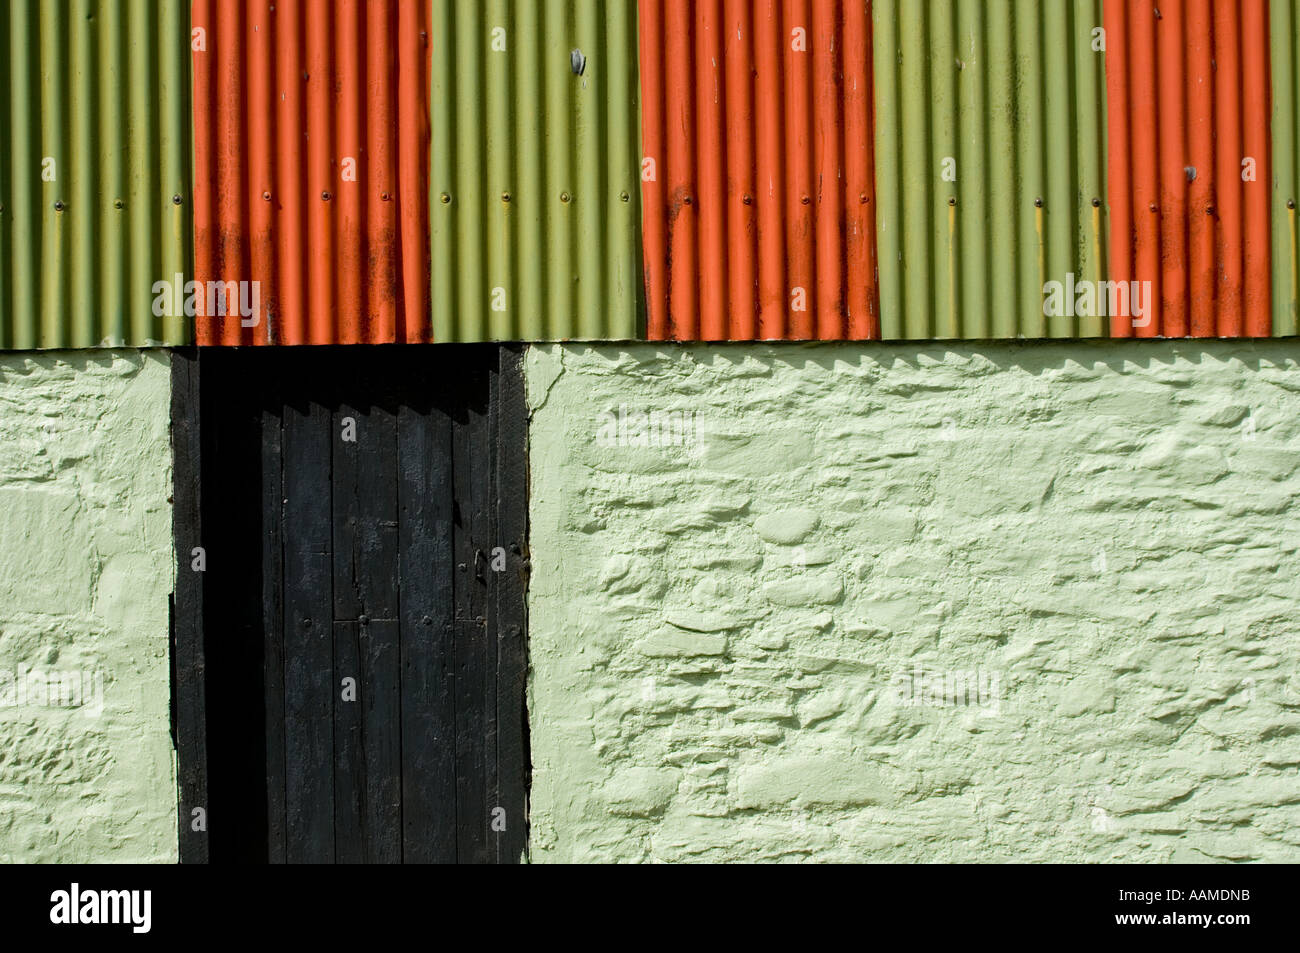 Grün und Orange bemalten Wand und Wellpappe Eisen Verkleidung Bauernhof Gebäude Schuppen Pontrhydfendigaid Ceredigion Wales UK Stockfoto